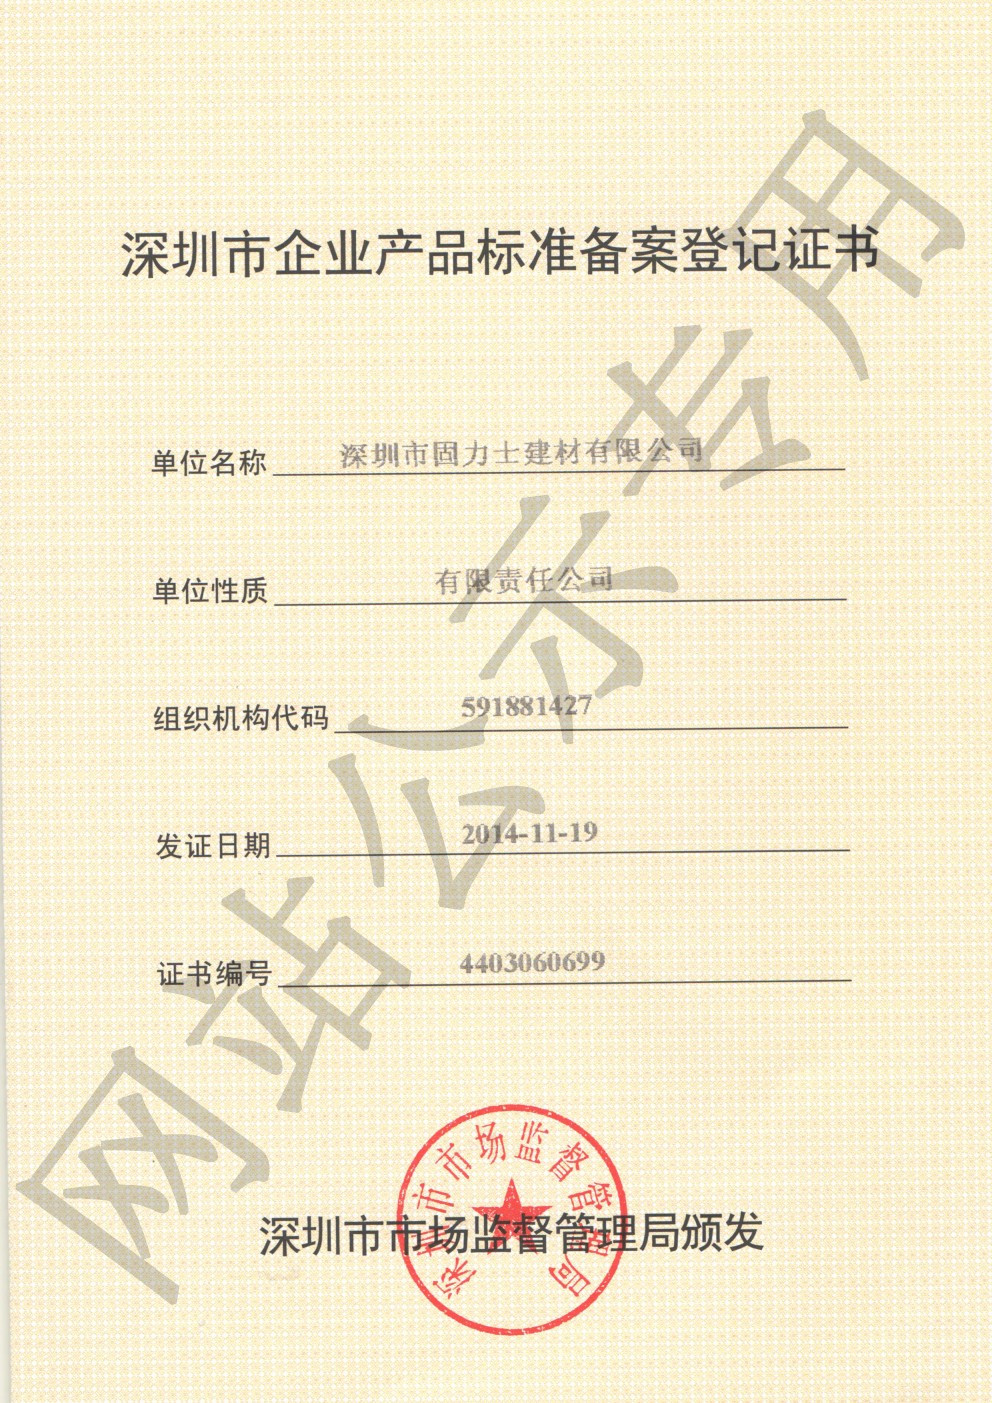 天河企业产品标准登记证书